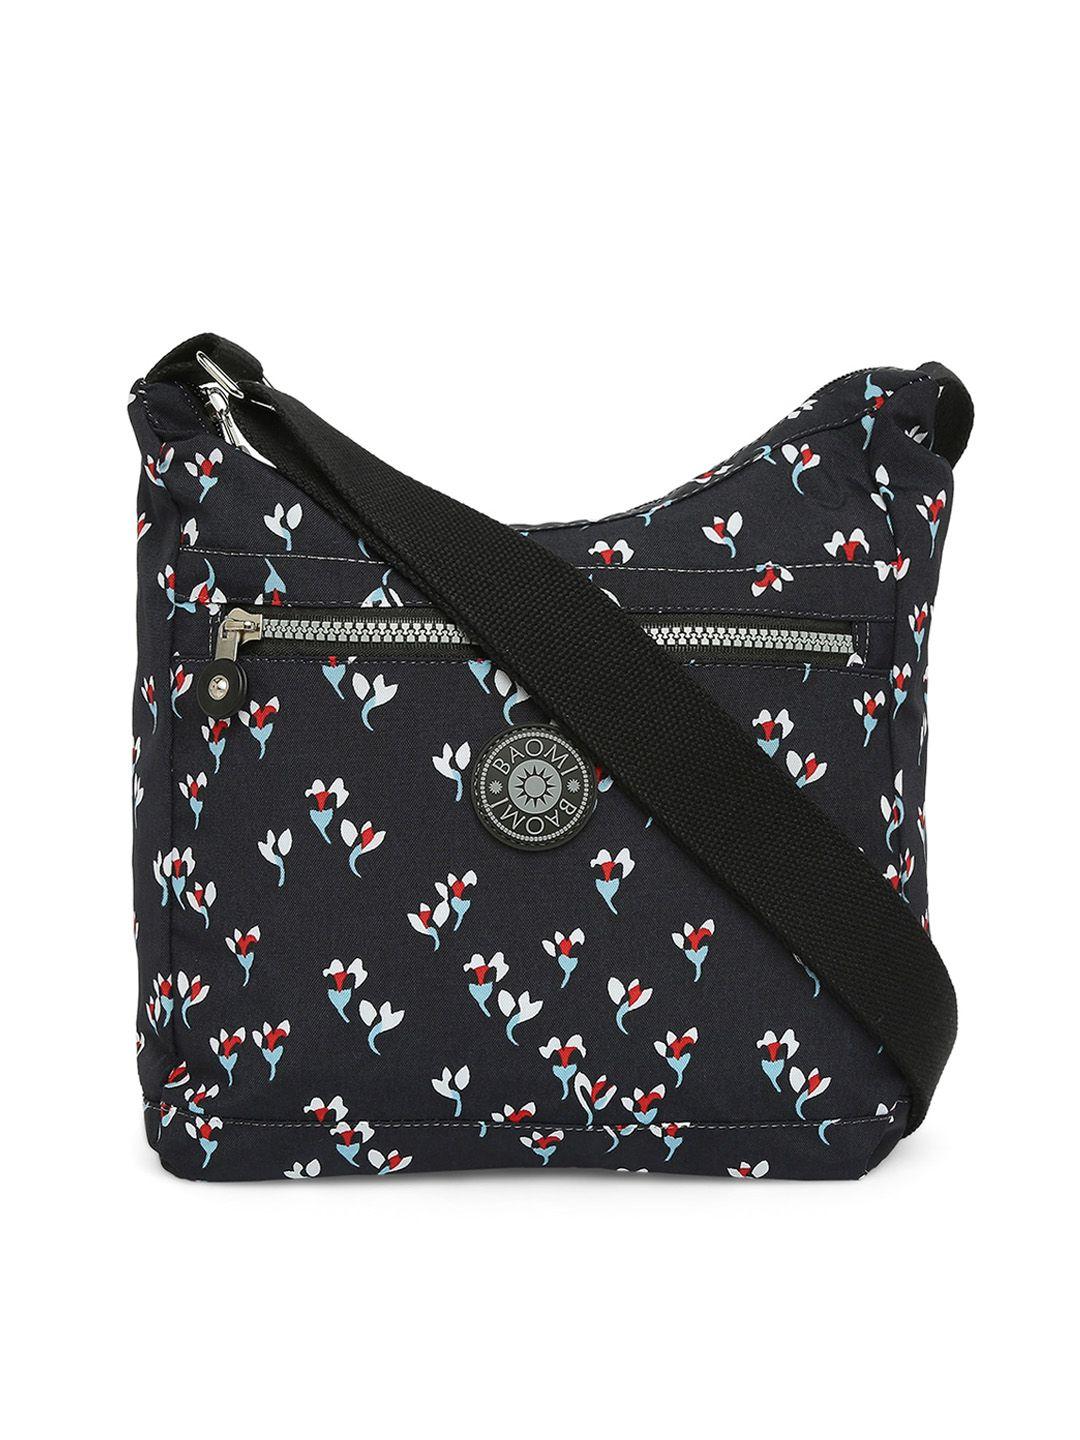 baomi black floral printed structured sling bag